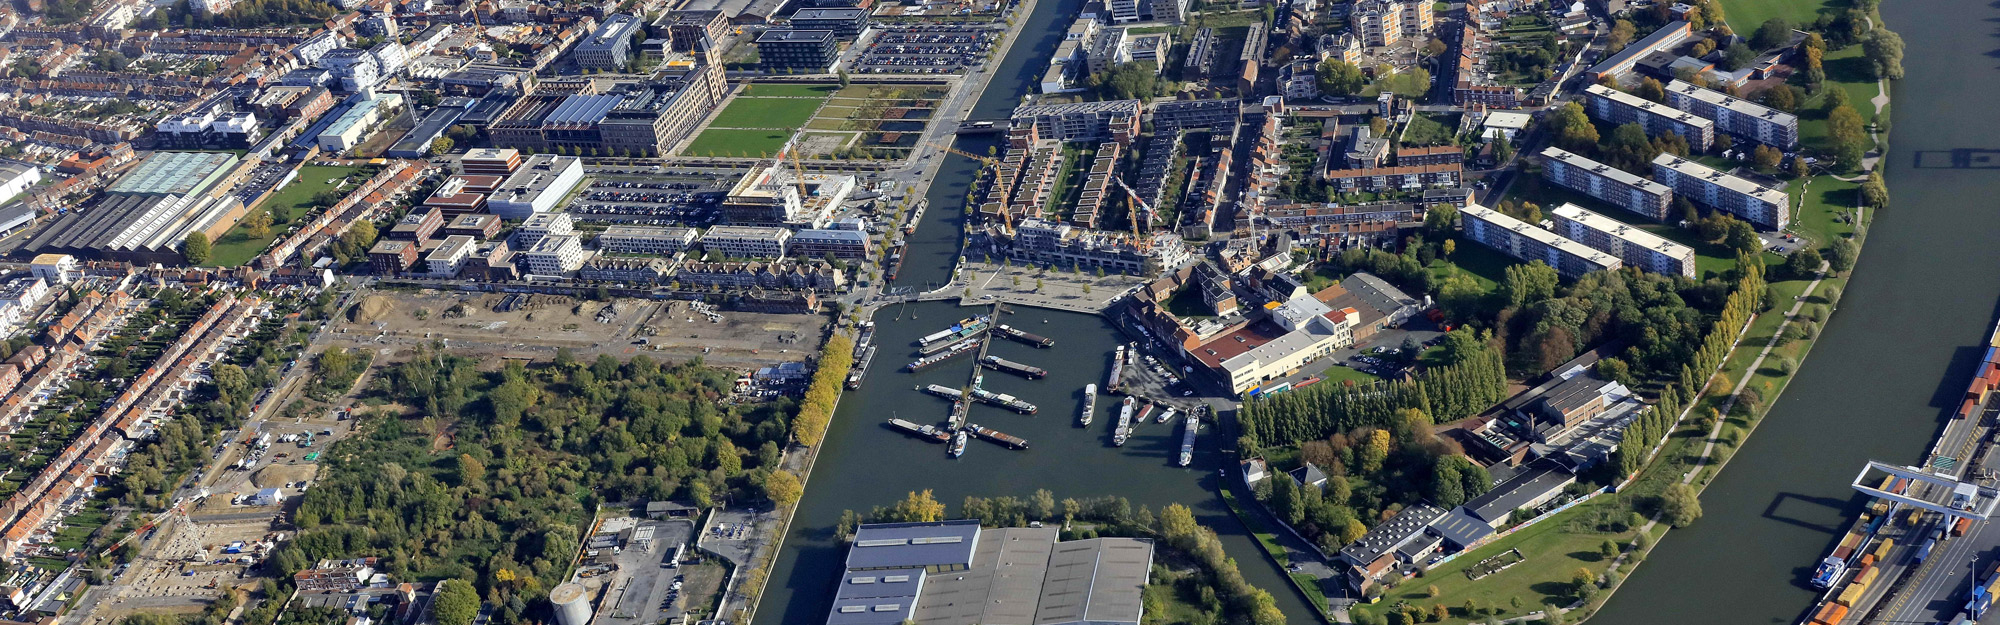 MIPIM 2019  Lille Métropole, terre de Design et d’opportunités immobilières